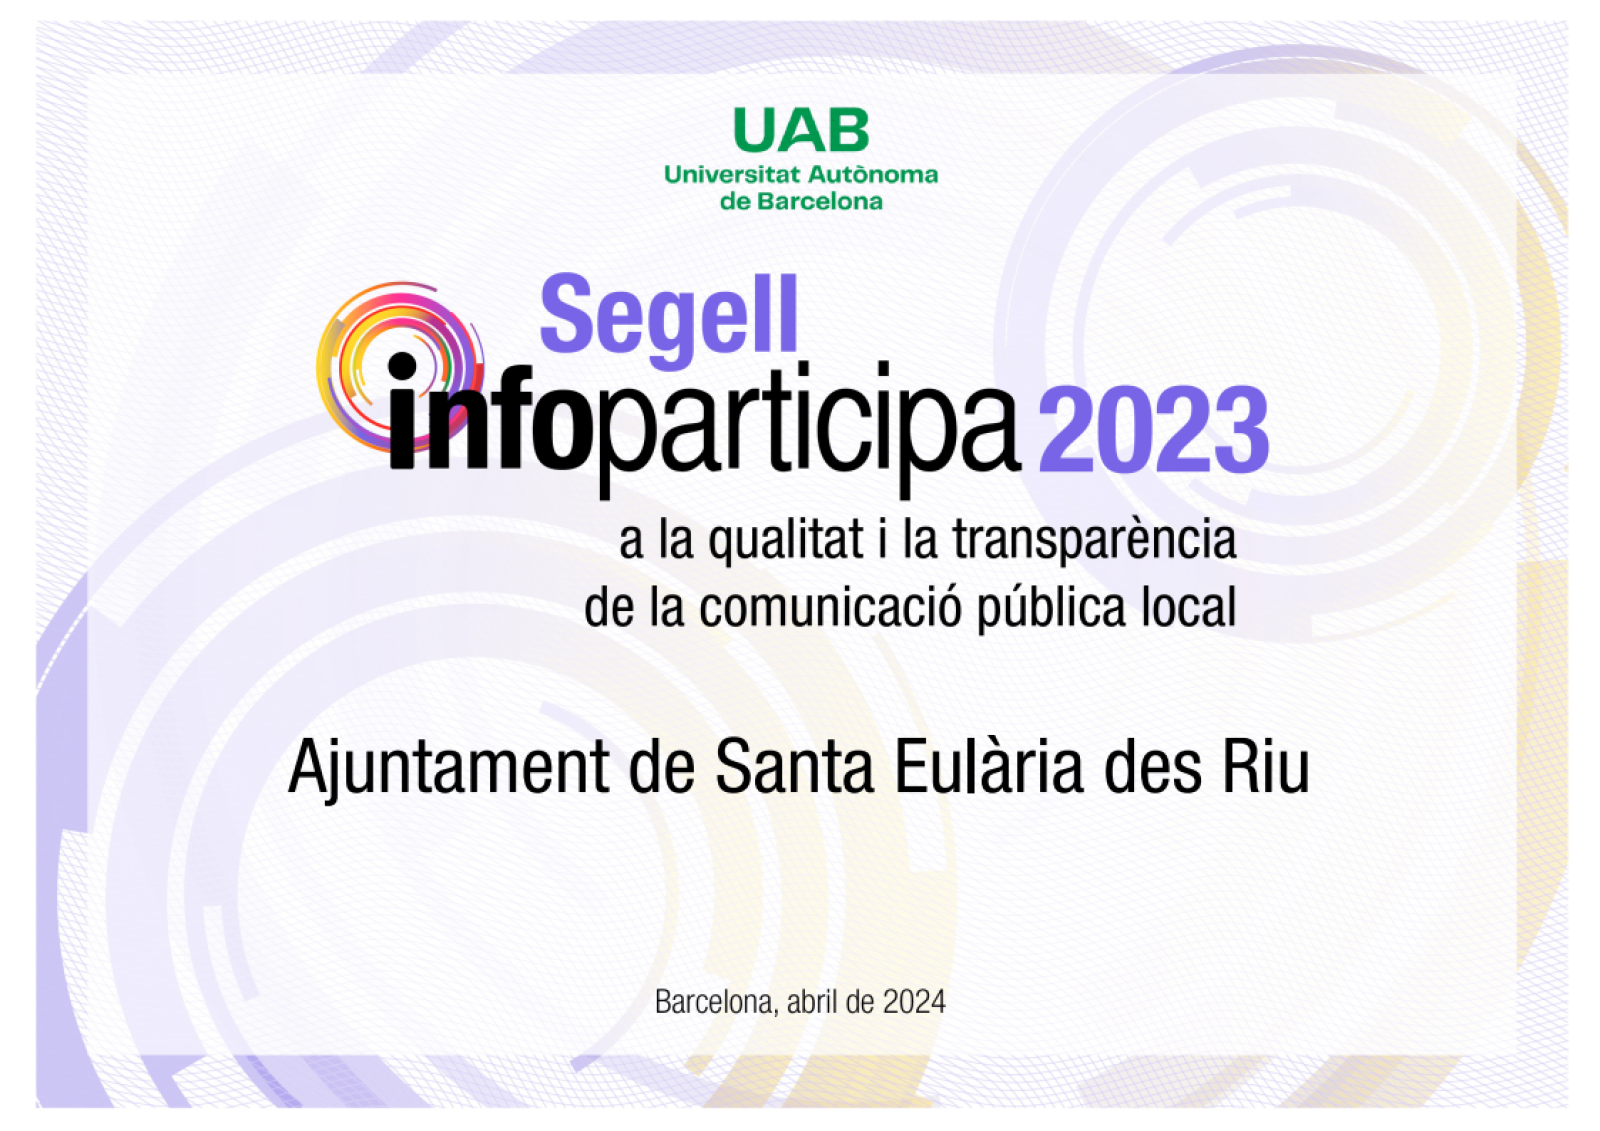 La Universitat Autònoma de Barcelona posiciona per quart any consecutiu a l'Ajuntament de Santa Eulària com el més transparent de Balears